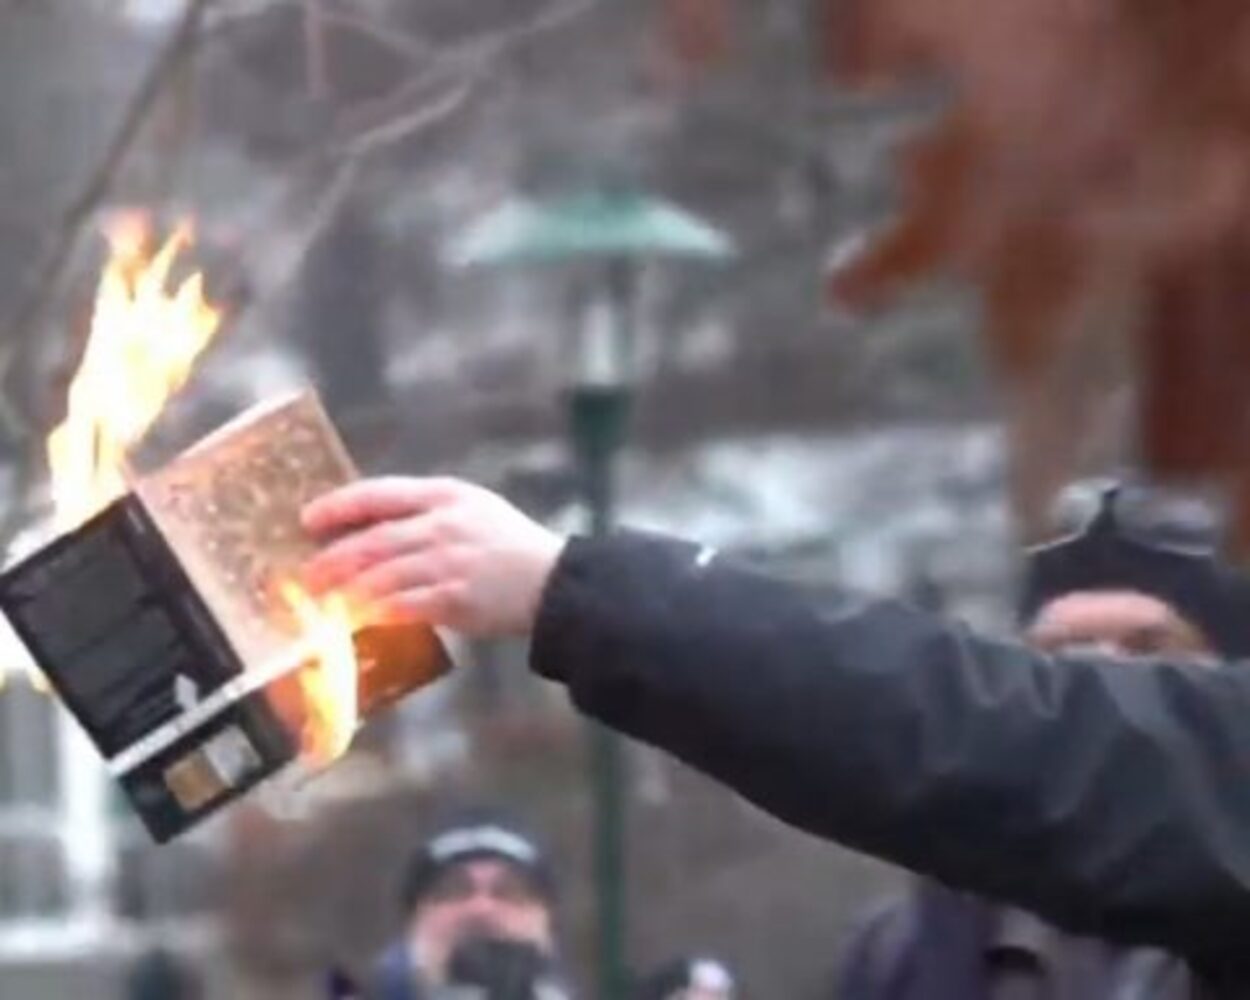 POLITICO: Tensiuni în Europa. Oficialii critică dur arderea Coranului